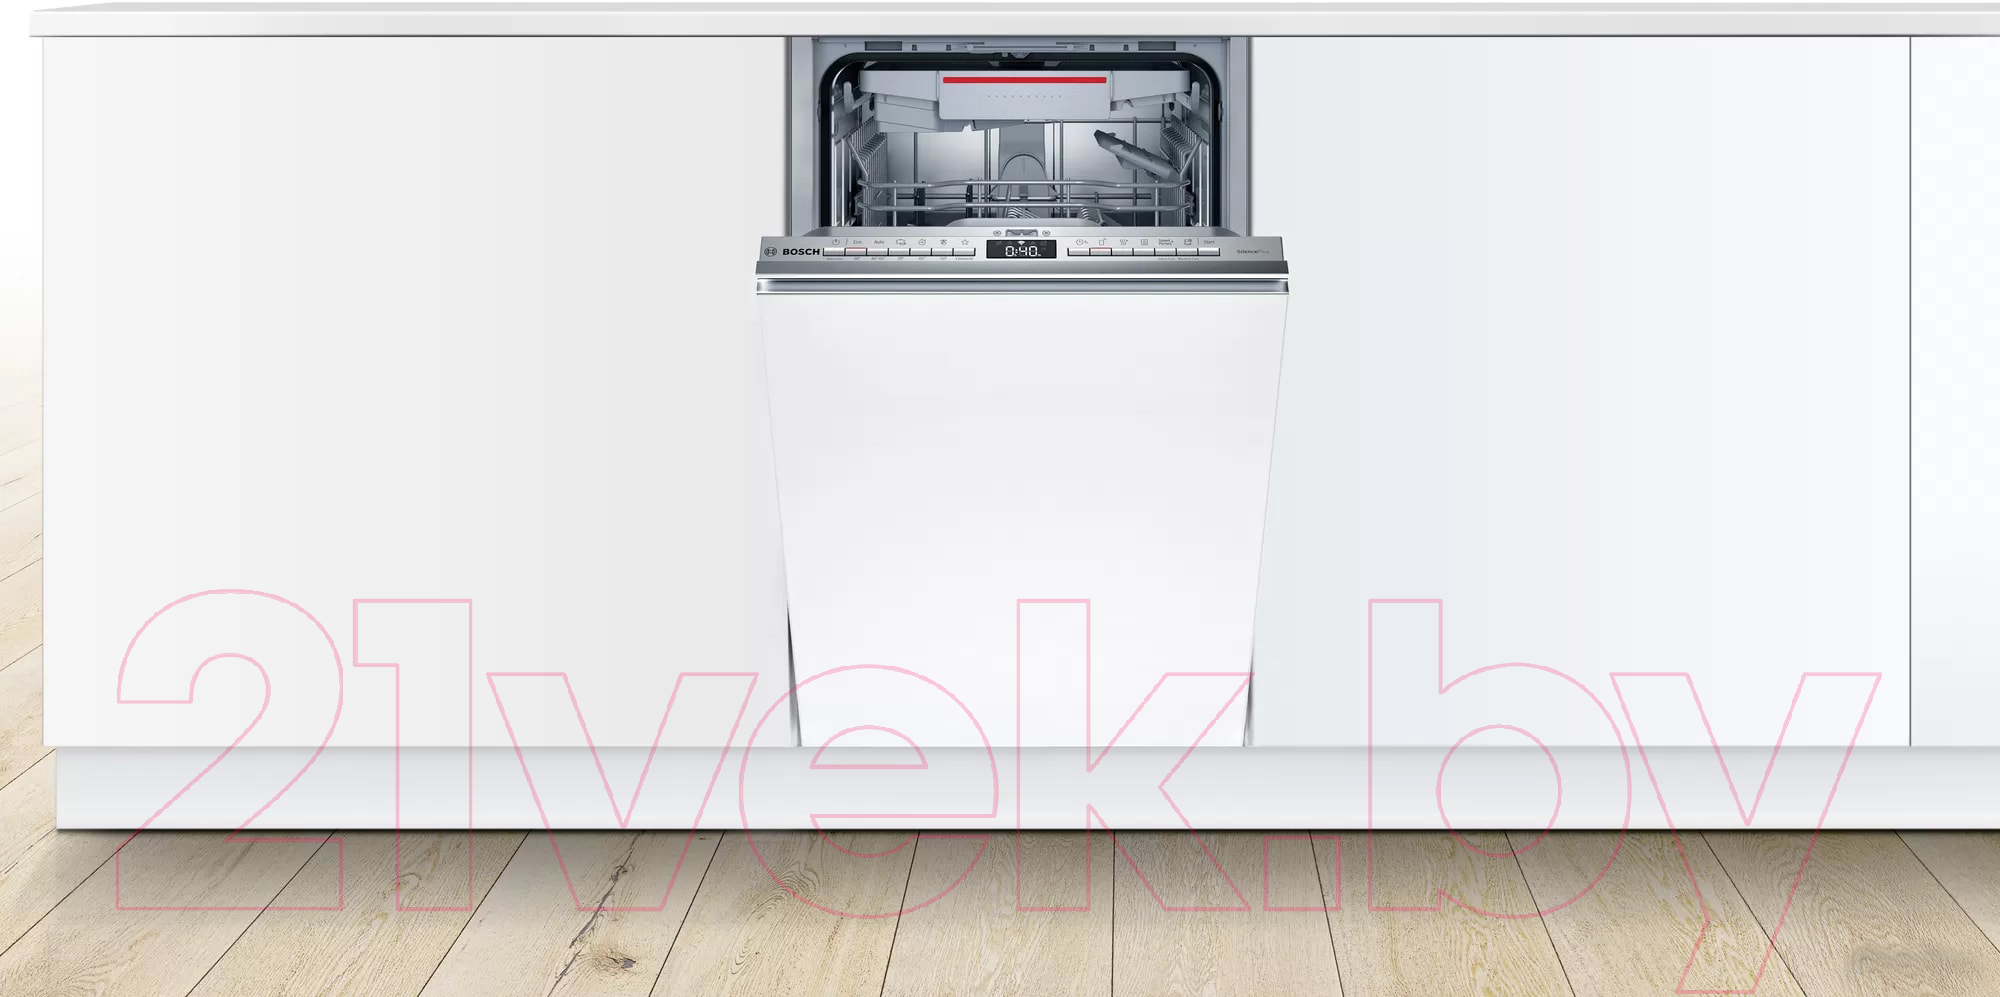 Посудомоечная машина Bosch SPV4HMX61E